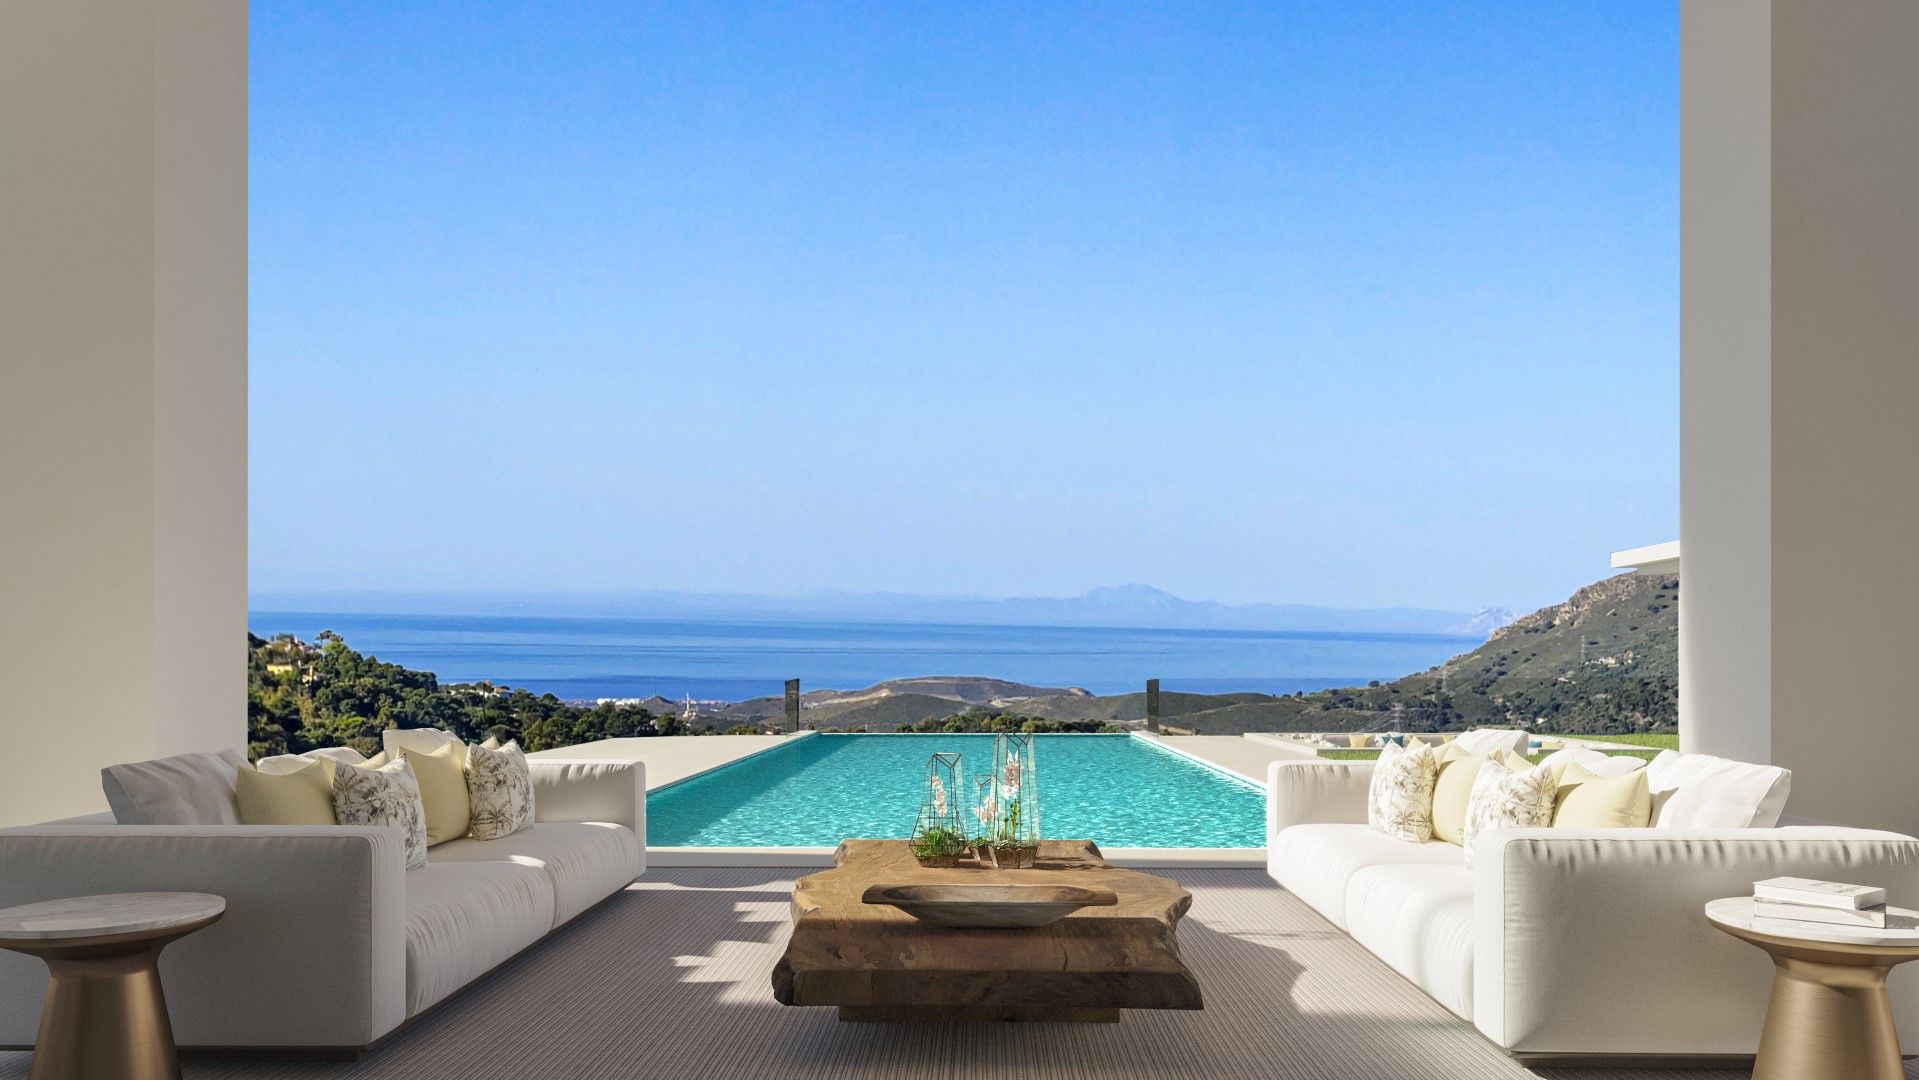 Off plan project of a luxury villa with astonishing views in La Zagaleta, Benahavis | Engel & Völkers Marbella